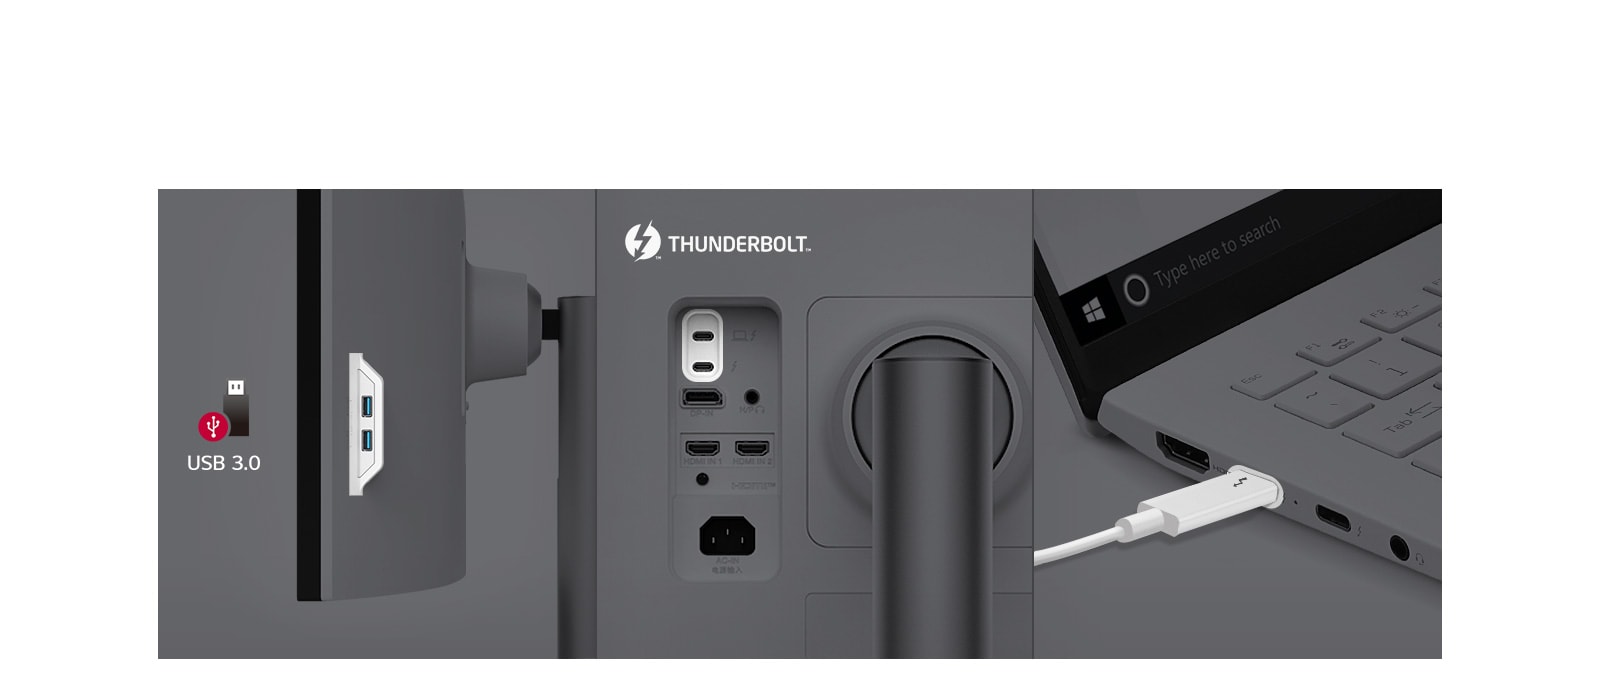 Port Thunderbolt™ 4 i inne ułatwiają obsługę i łączenie z innymi sprzętami.